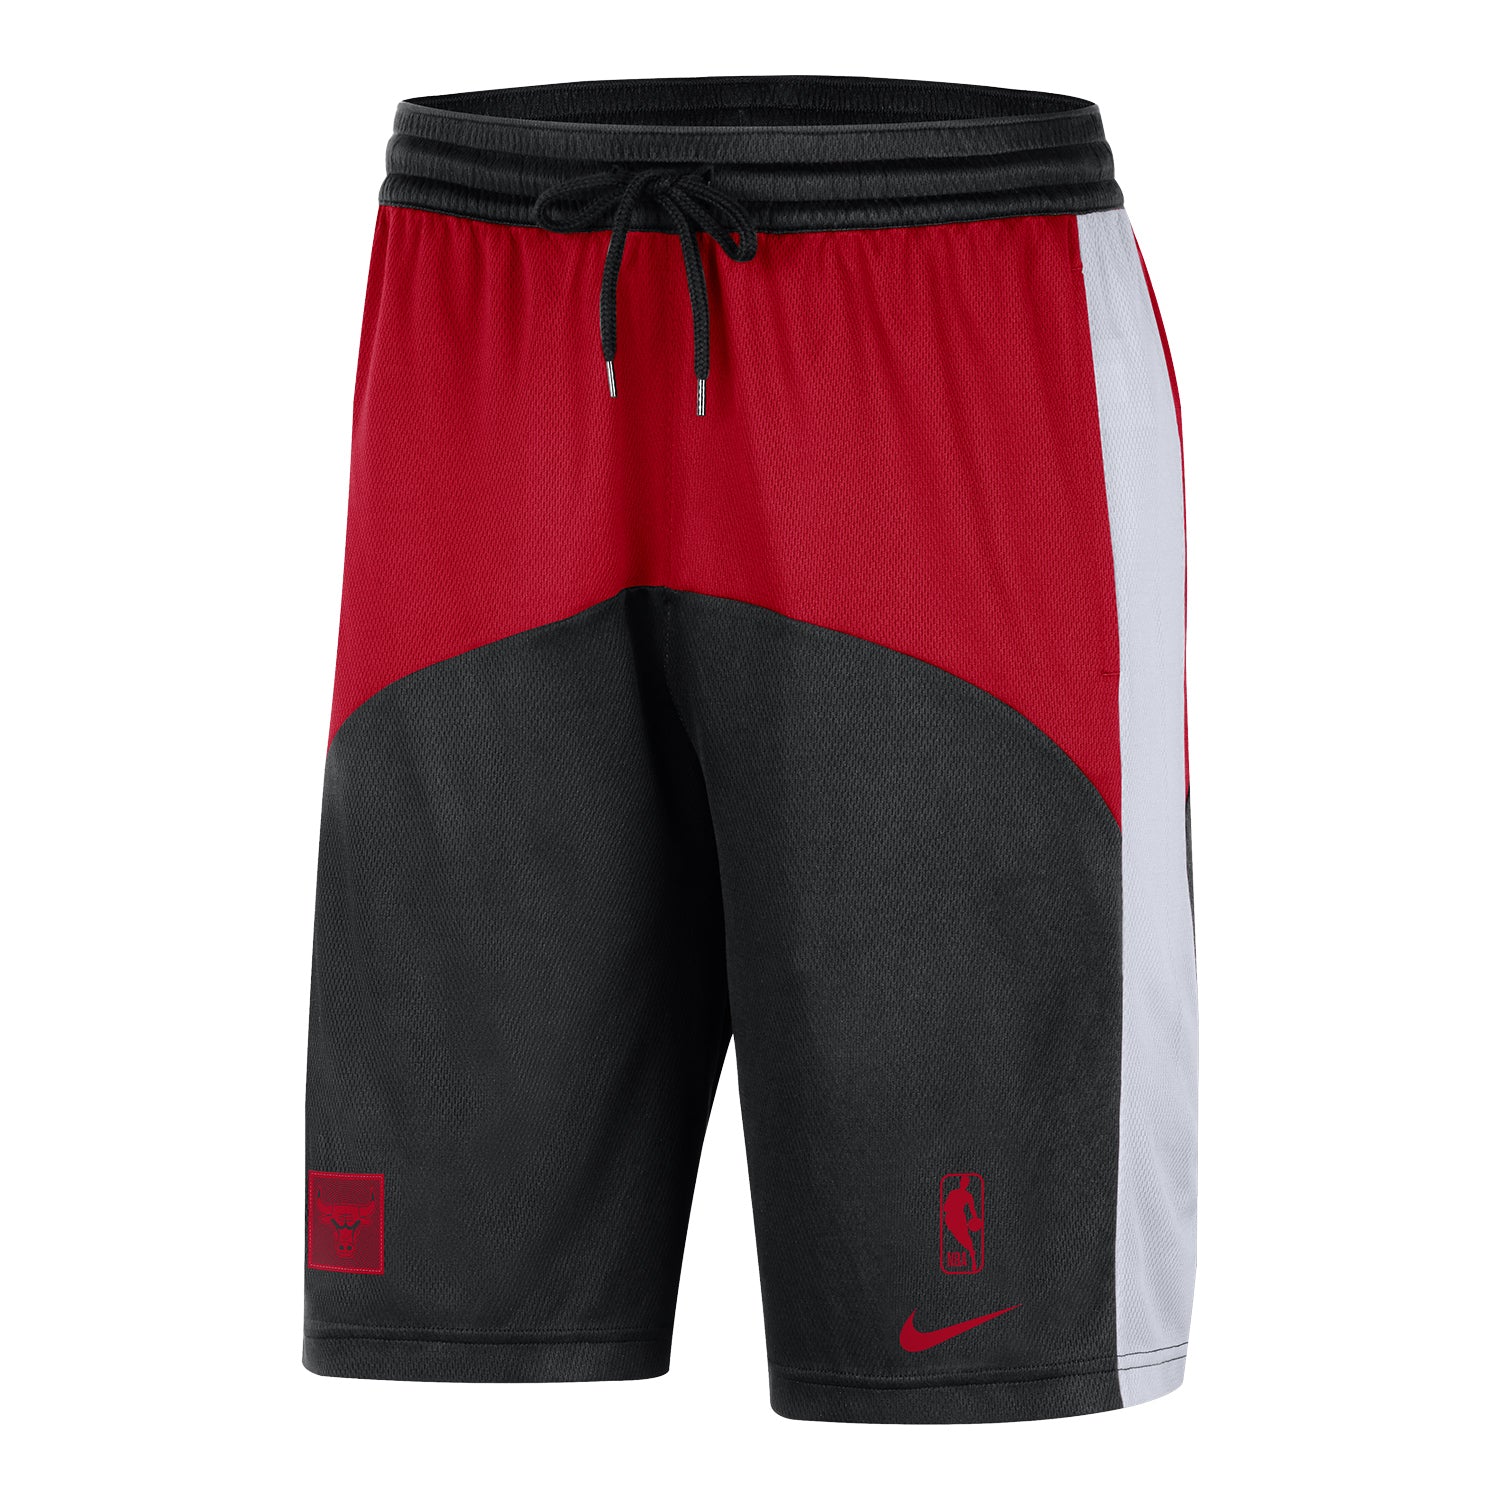 Official Chicago Bulls Mens Shorts, Basketball Shorts, Gym Shorts